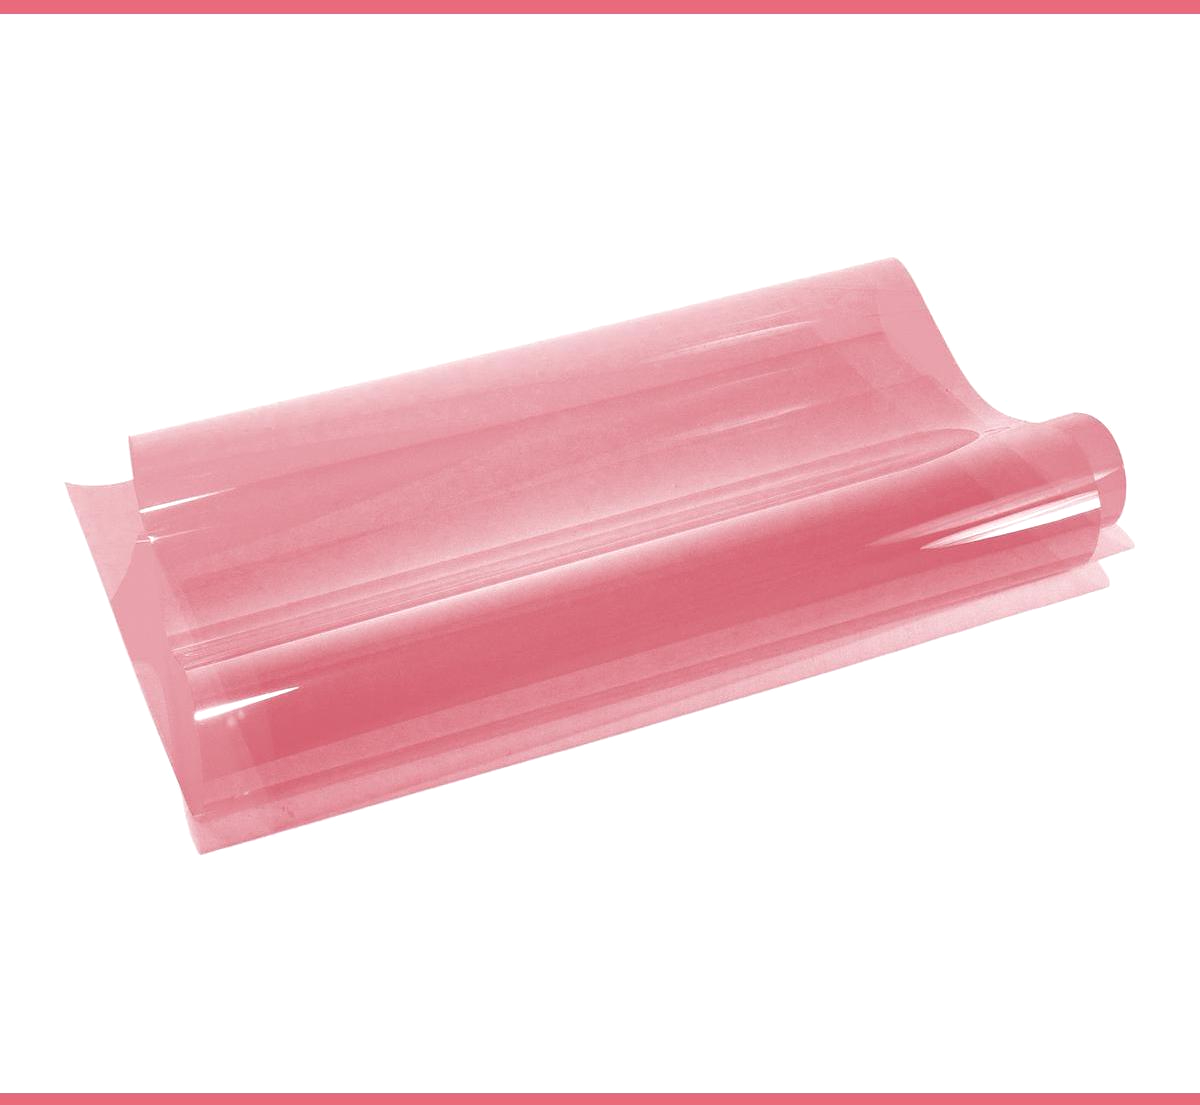 An image of 5489 Sunset Pink Lighting Gel Sheet